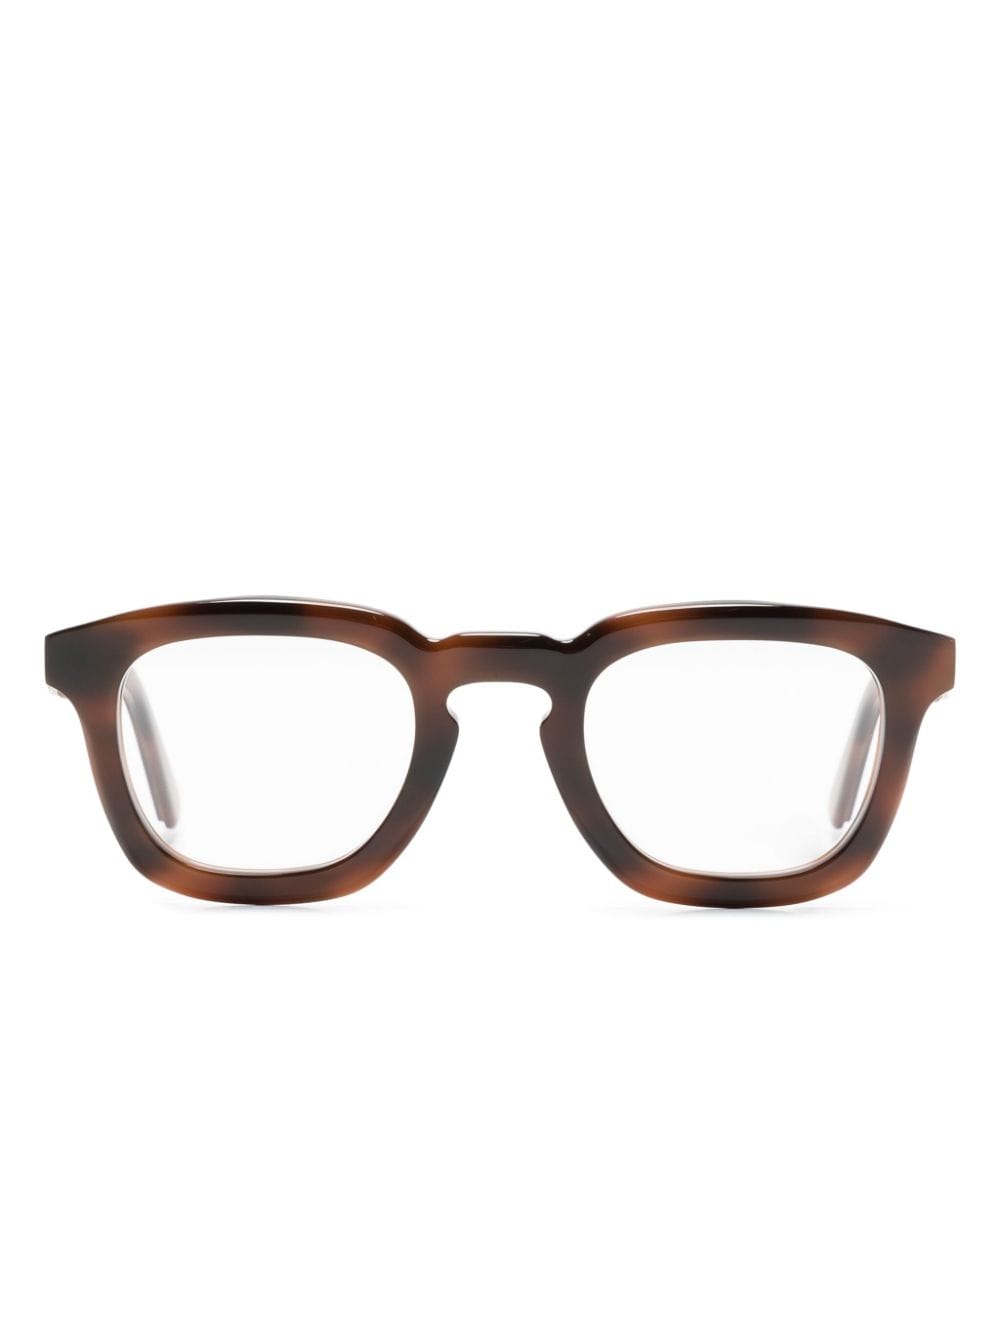 moncler eyewear lunettes de vue à effet écailles de tortue - marron